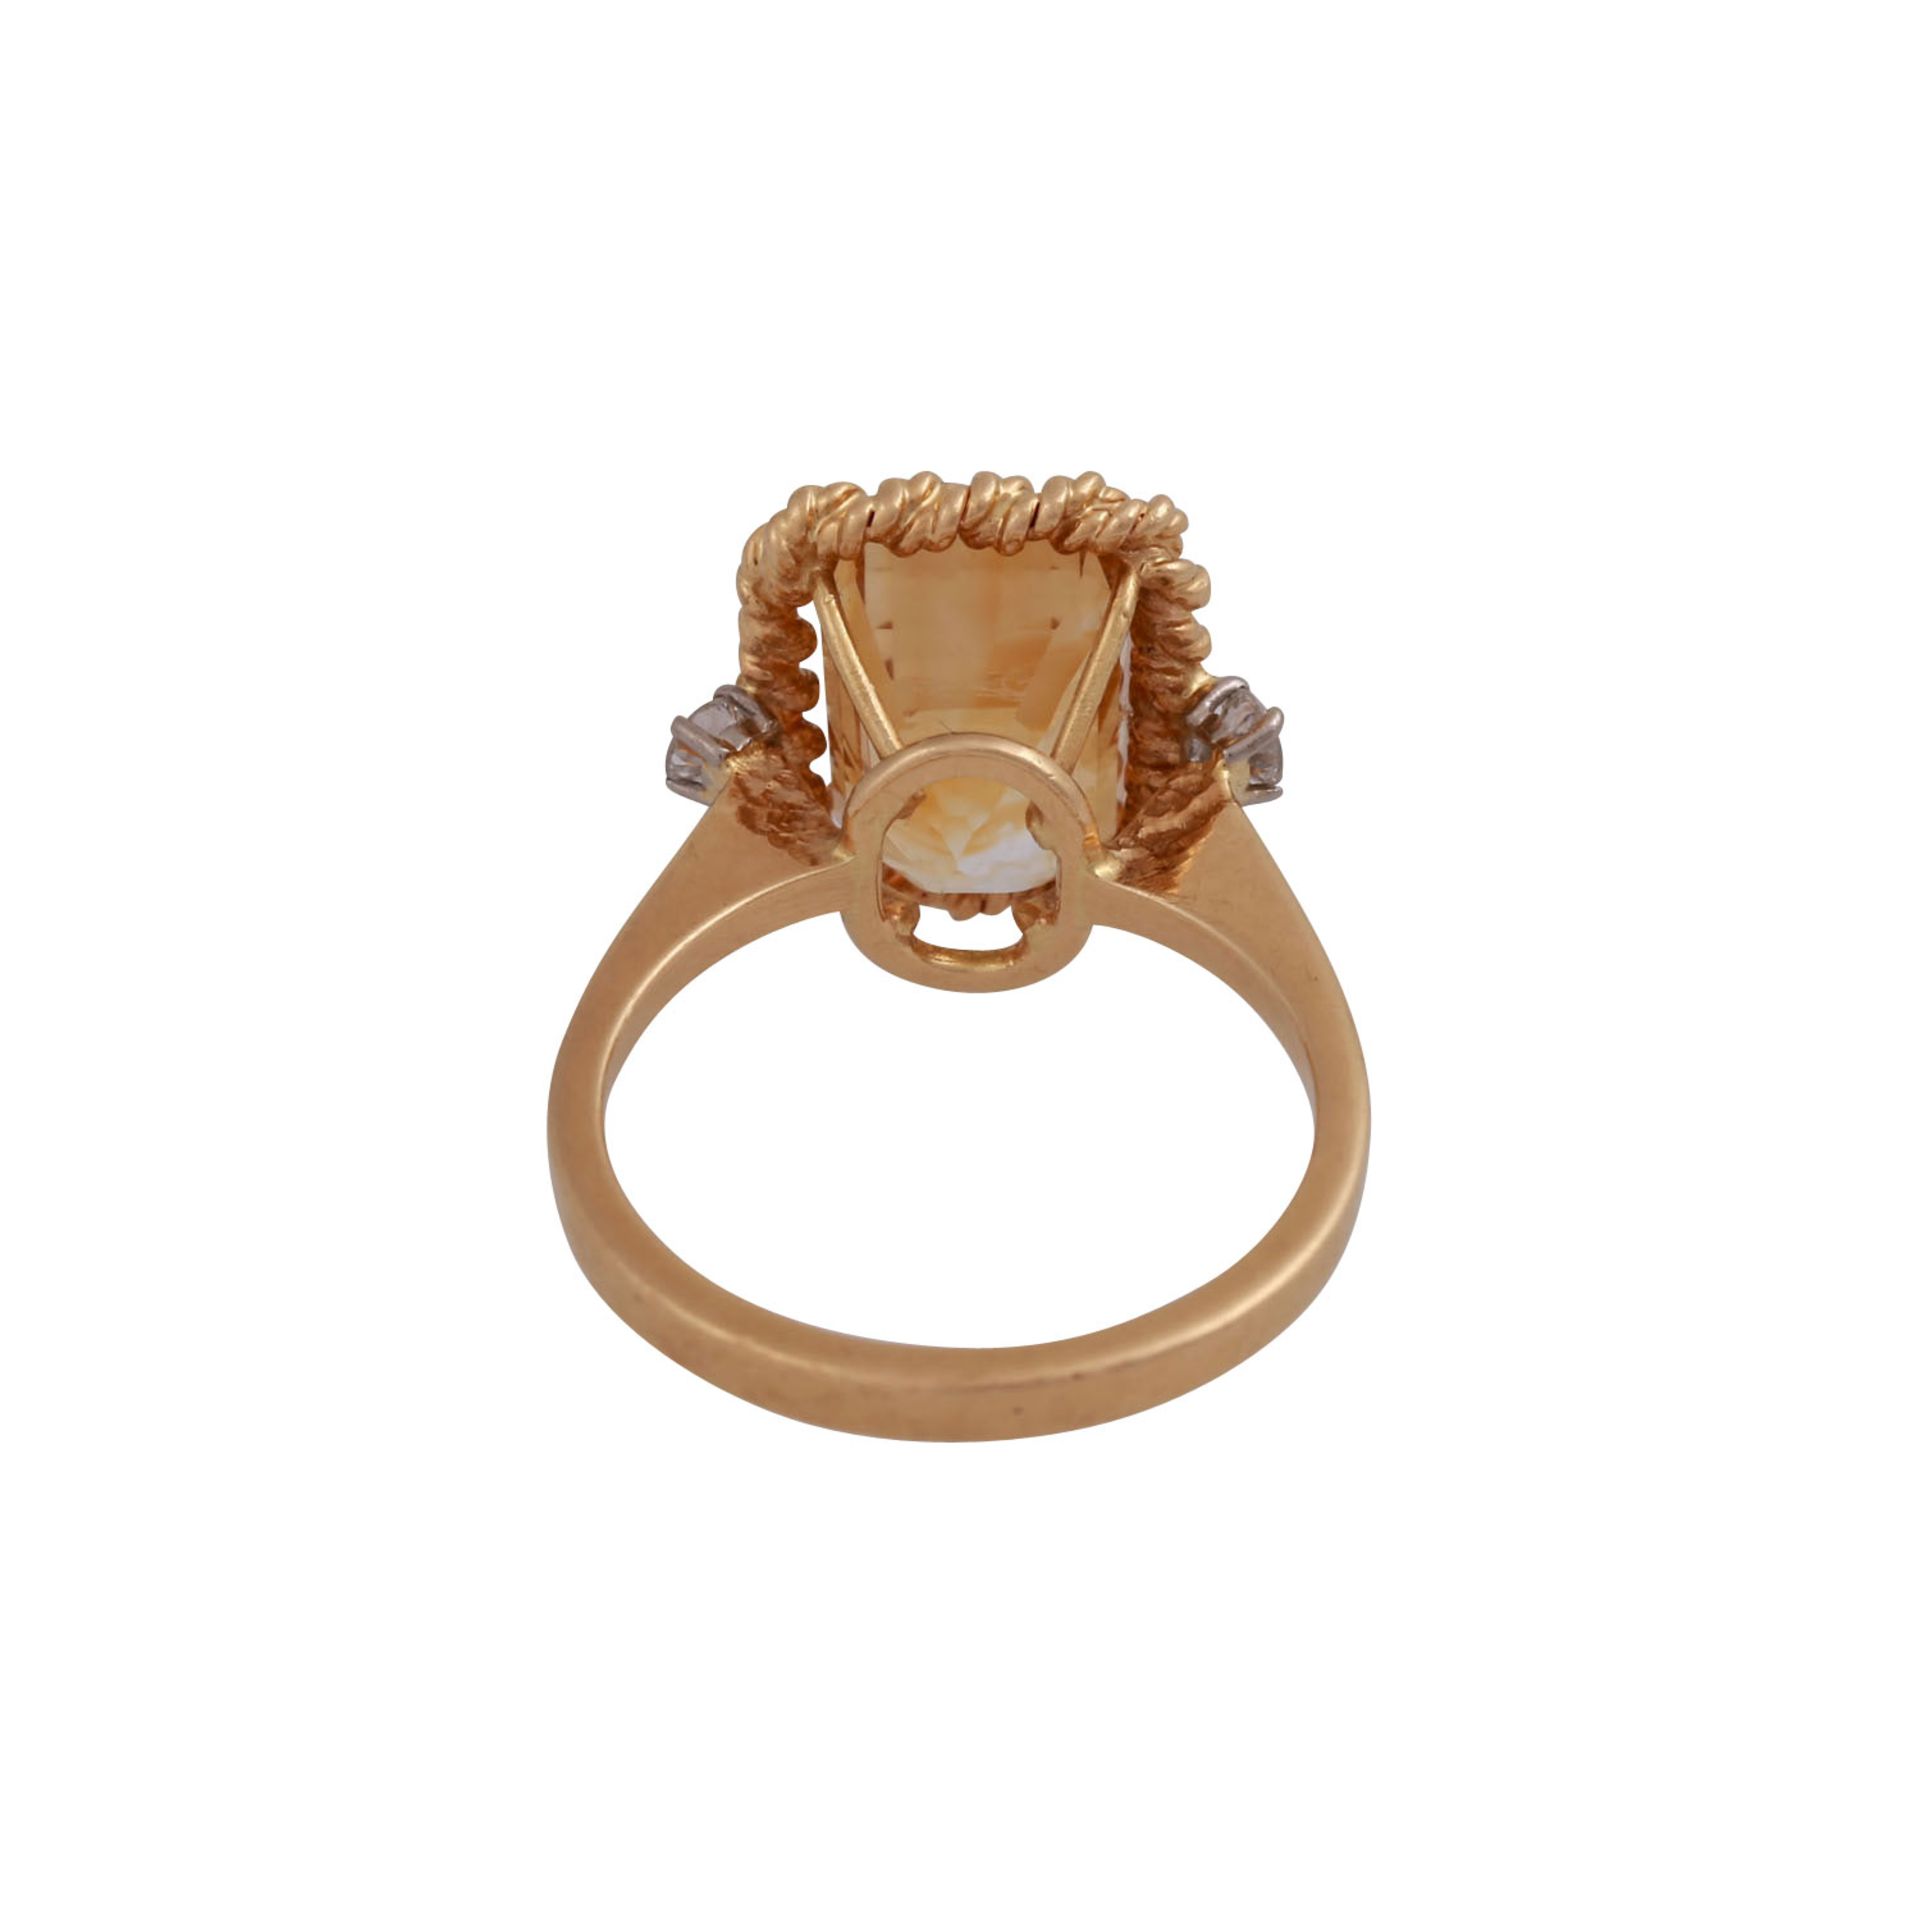 Ring mit Citrin flankiert von 2 Brillanten, zus. ca., 0,18 ct,mittl. Farb- und Reinheitsgrad, GG - Image 4 of 4